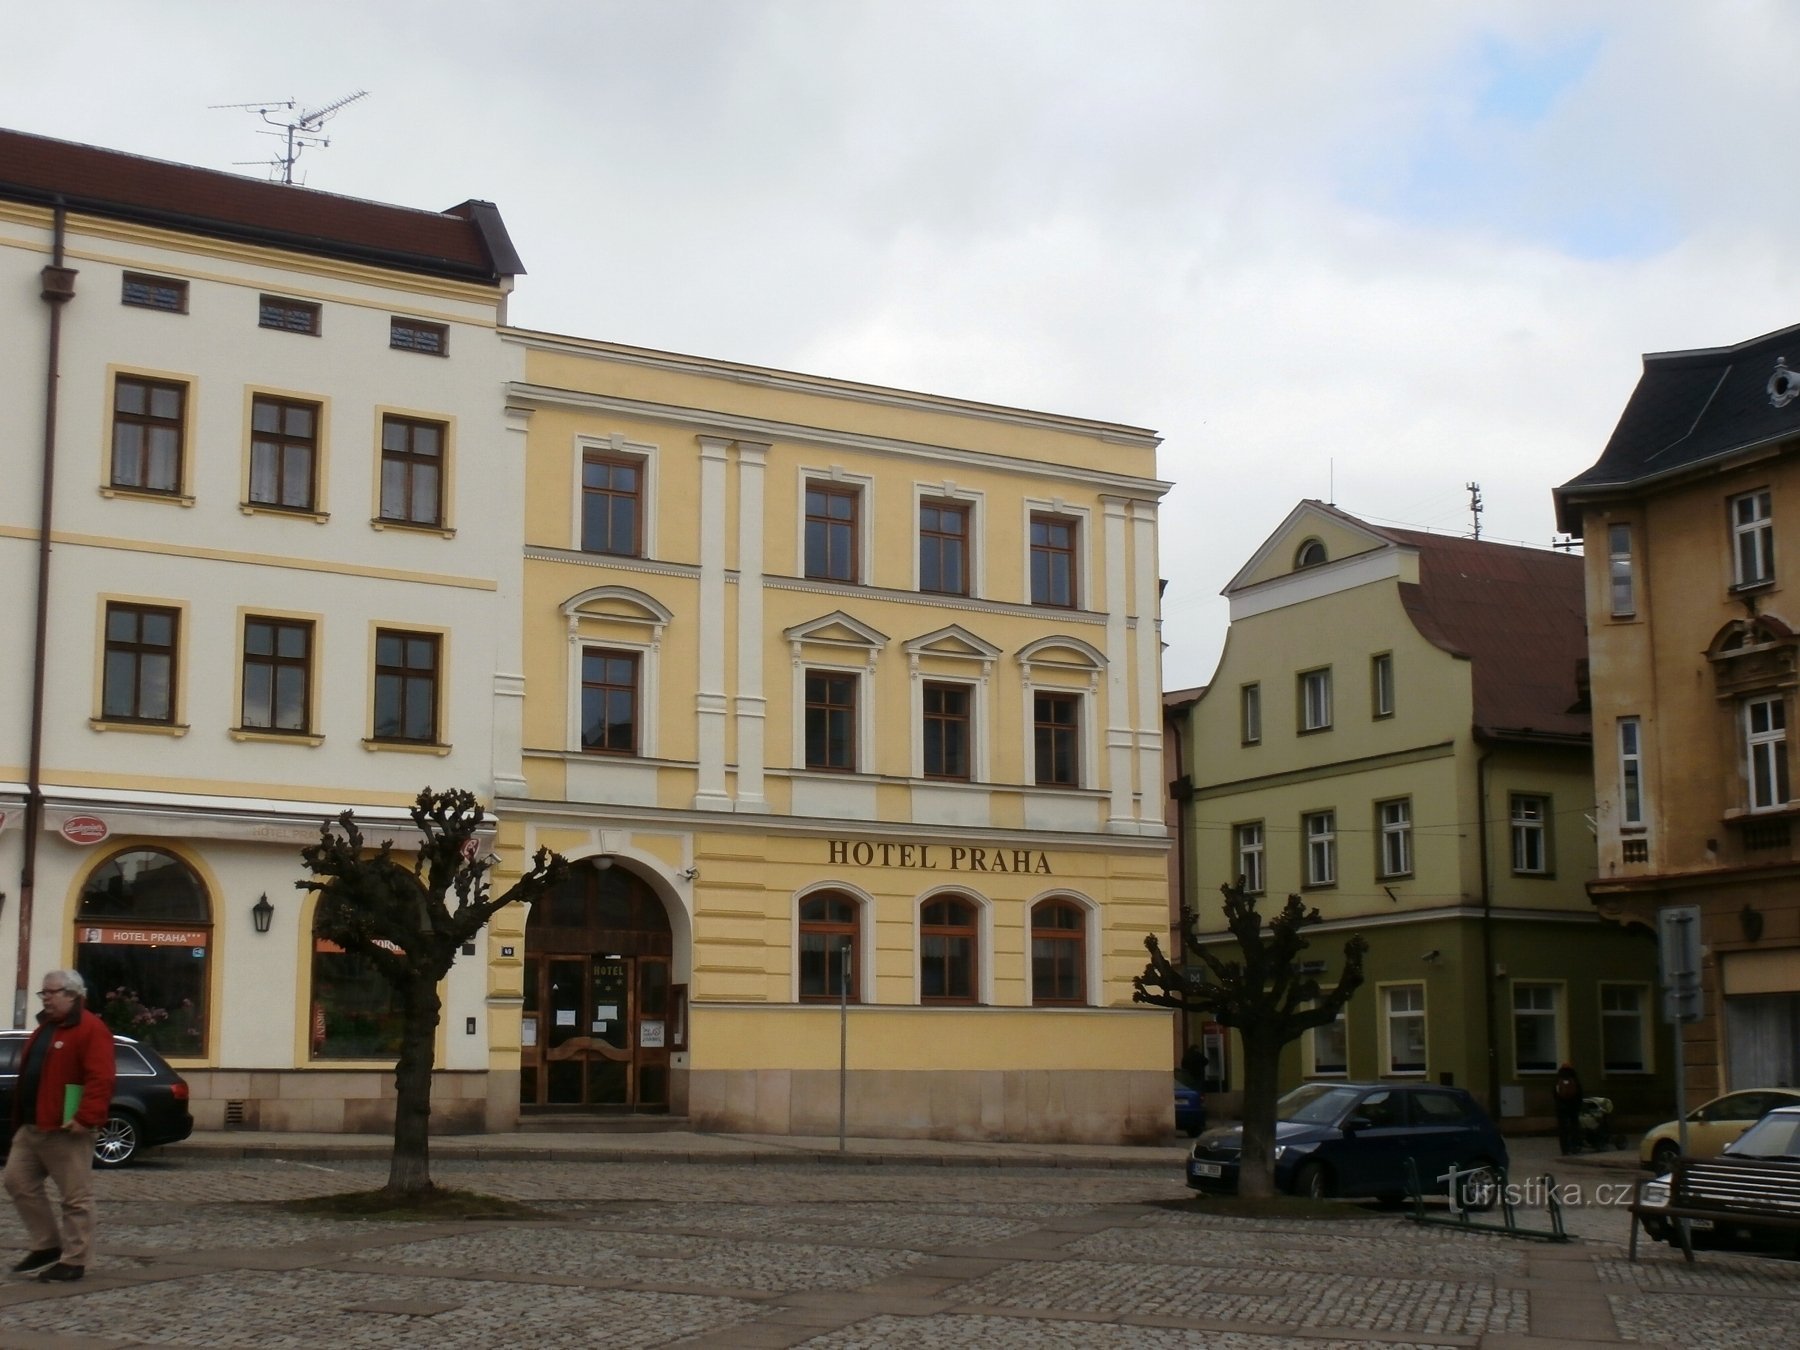 2. Hotel Prag på Mírové náměstí - nærbillede